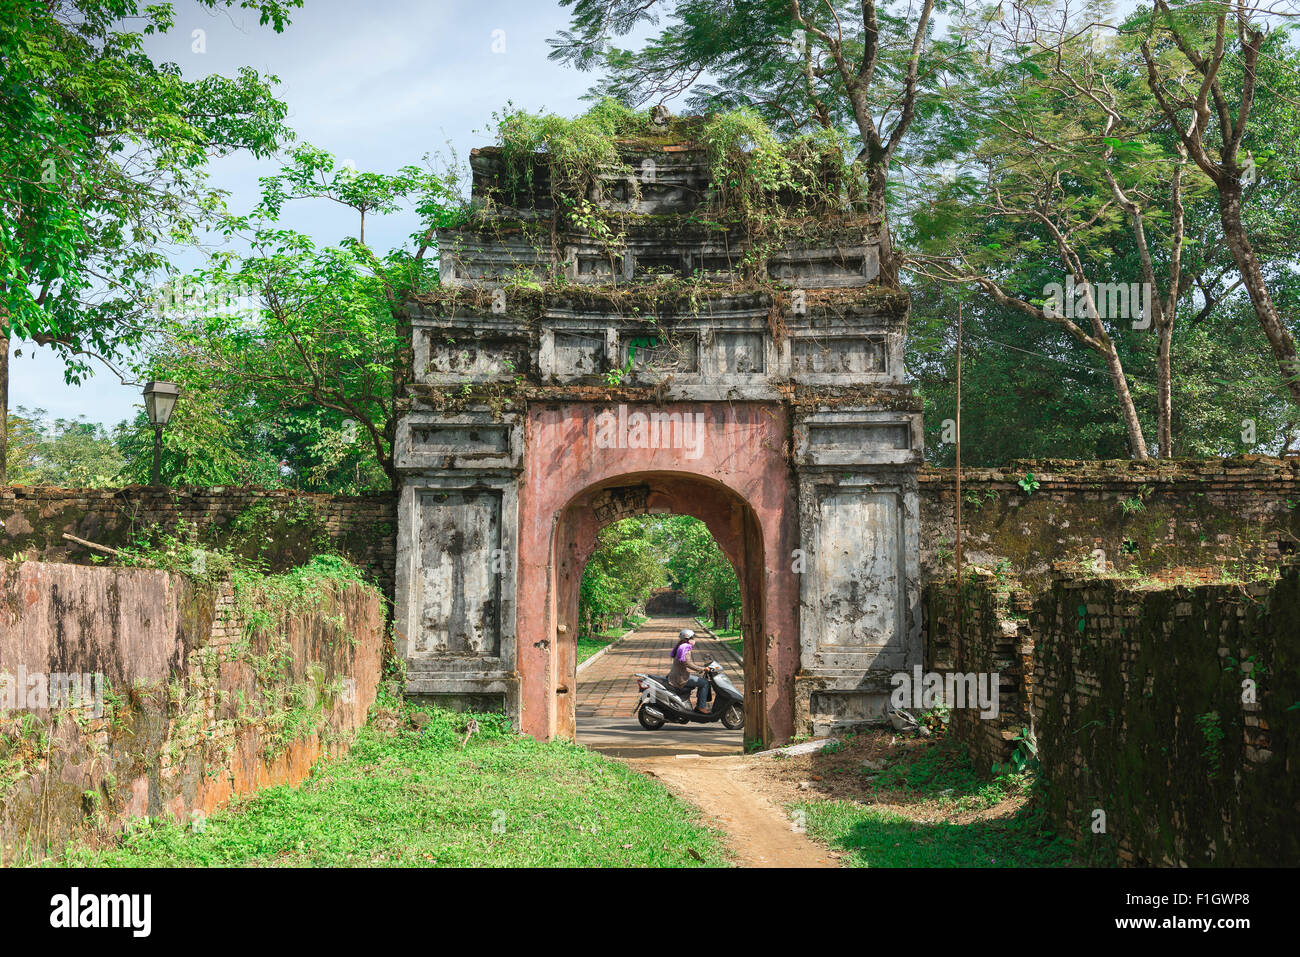 Vietnam Hue ciudadela, una antigua casa-puerta dentro de los jardines de la Ciudadela Imperial en Hue, Vietnam central. Foto de stock